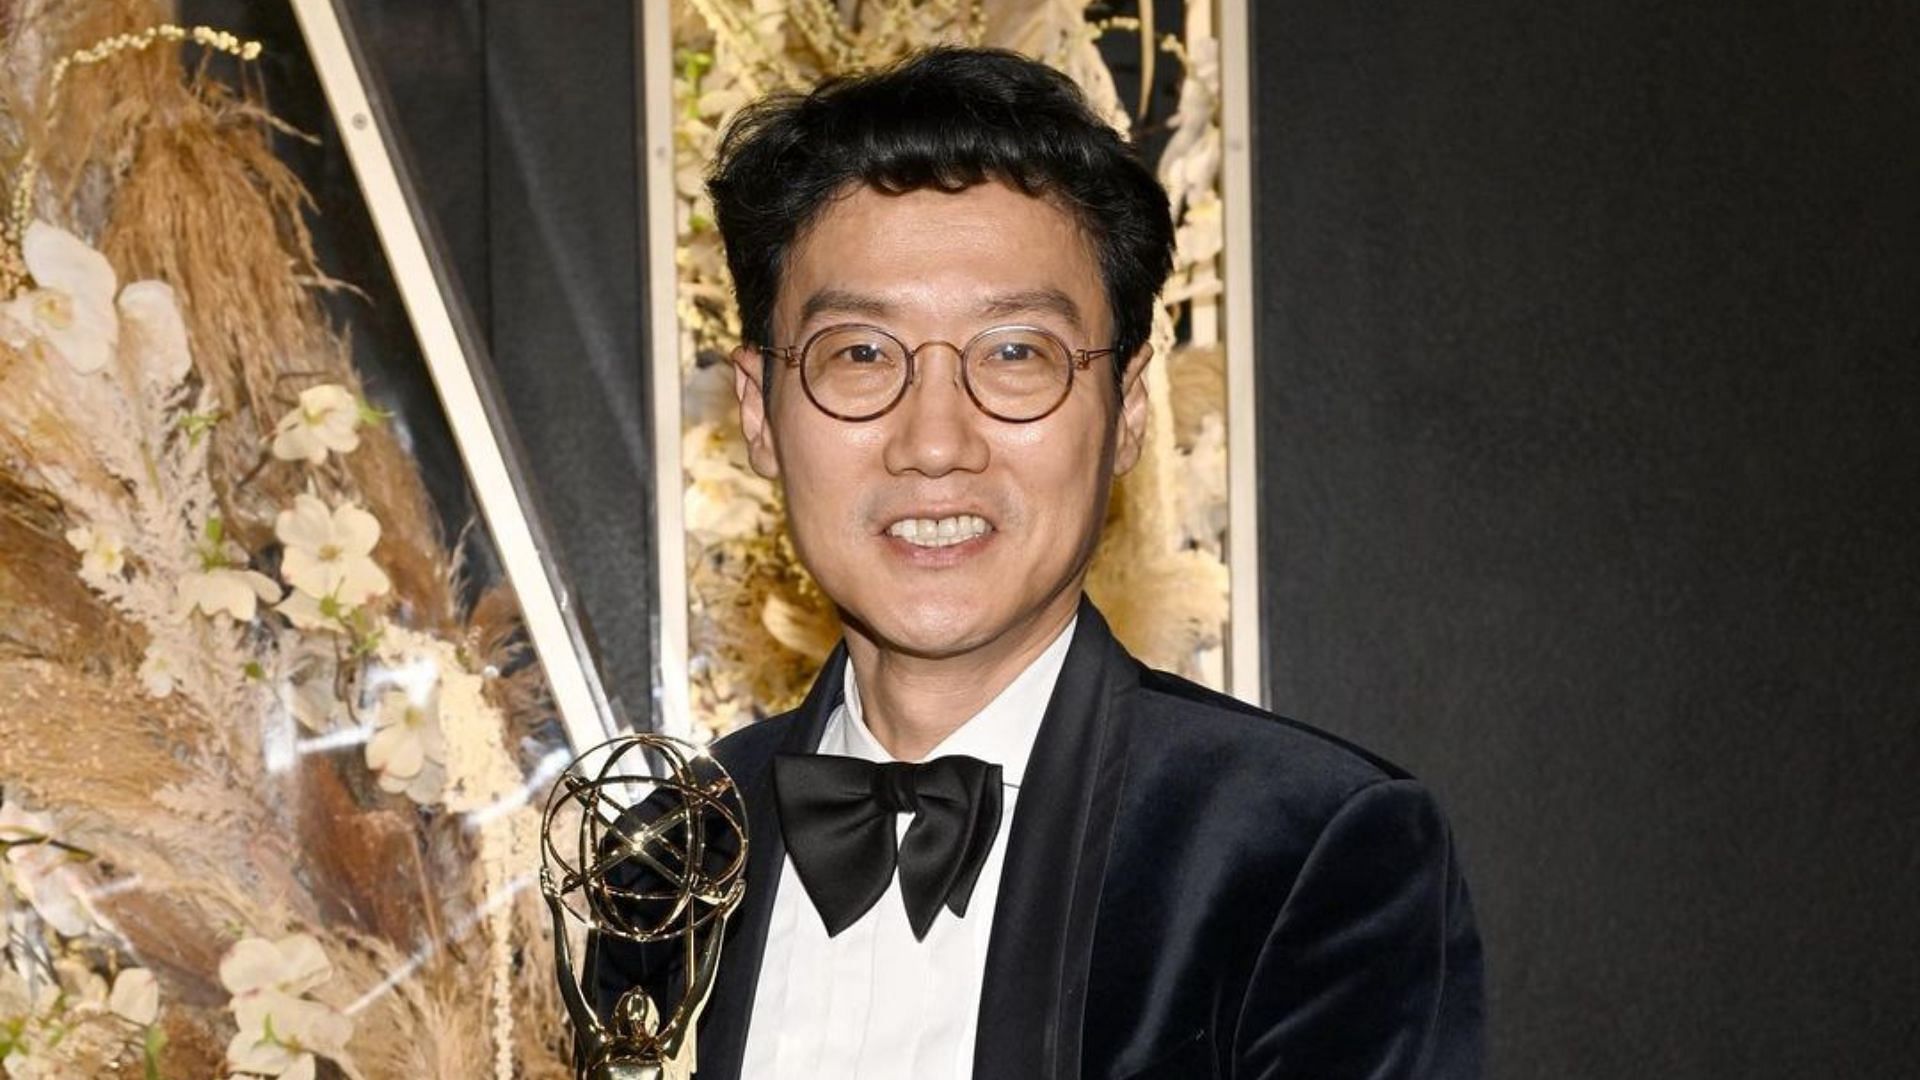 Squid Game director Hwang Dong-hyuk won Emmys 2022